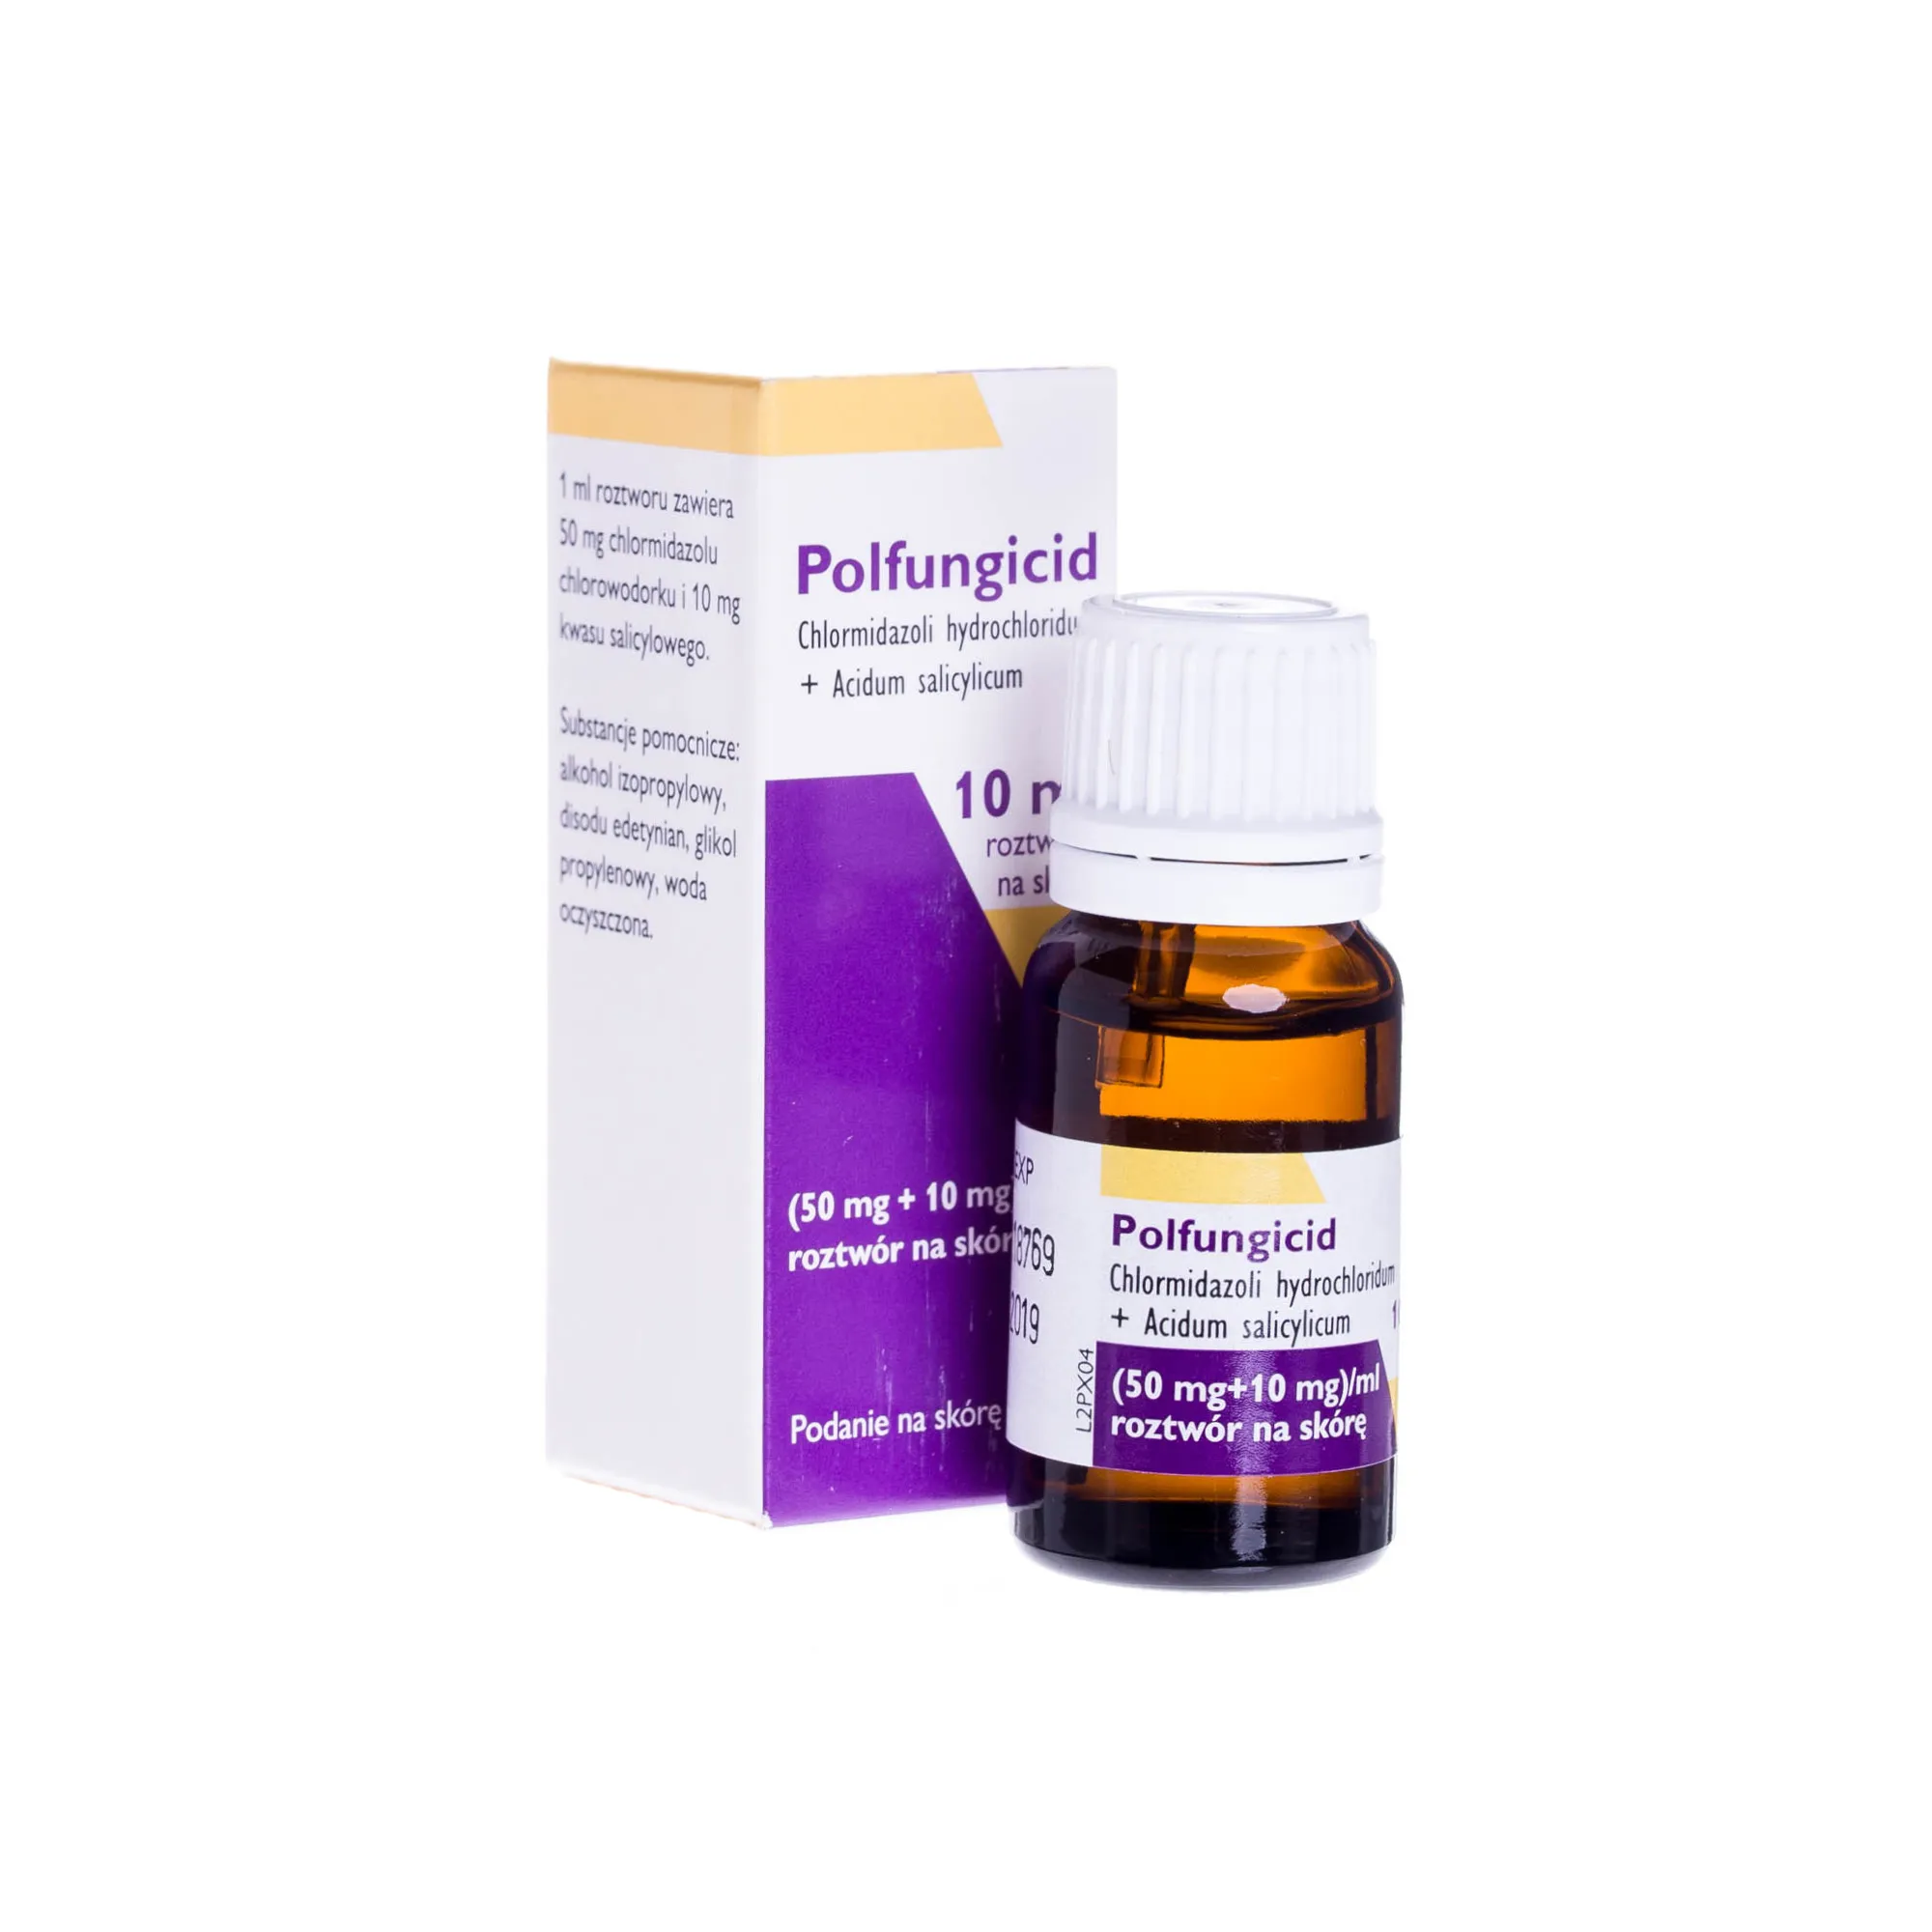 Polfungicid (50 mg+ 10 mg)/ml - roztwór na skórę stosowany w leczeniu zakażeń paznokci i skóry, 10 ml